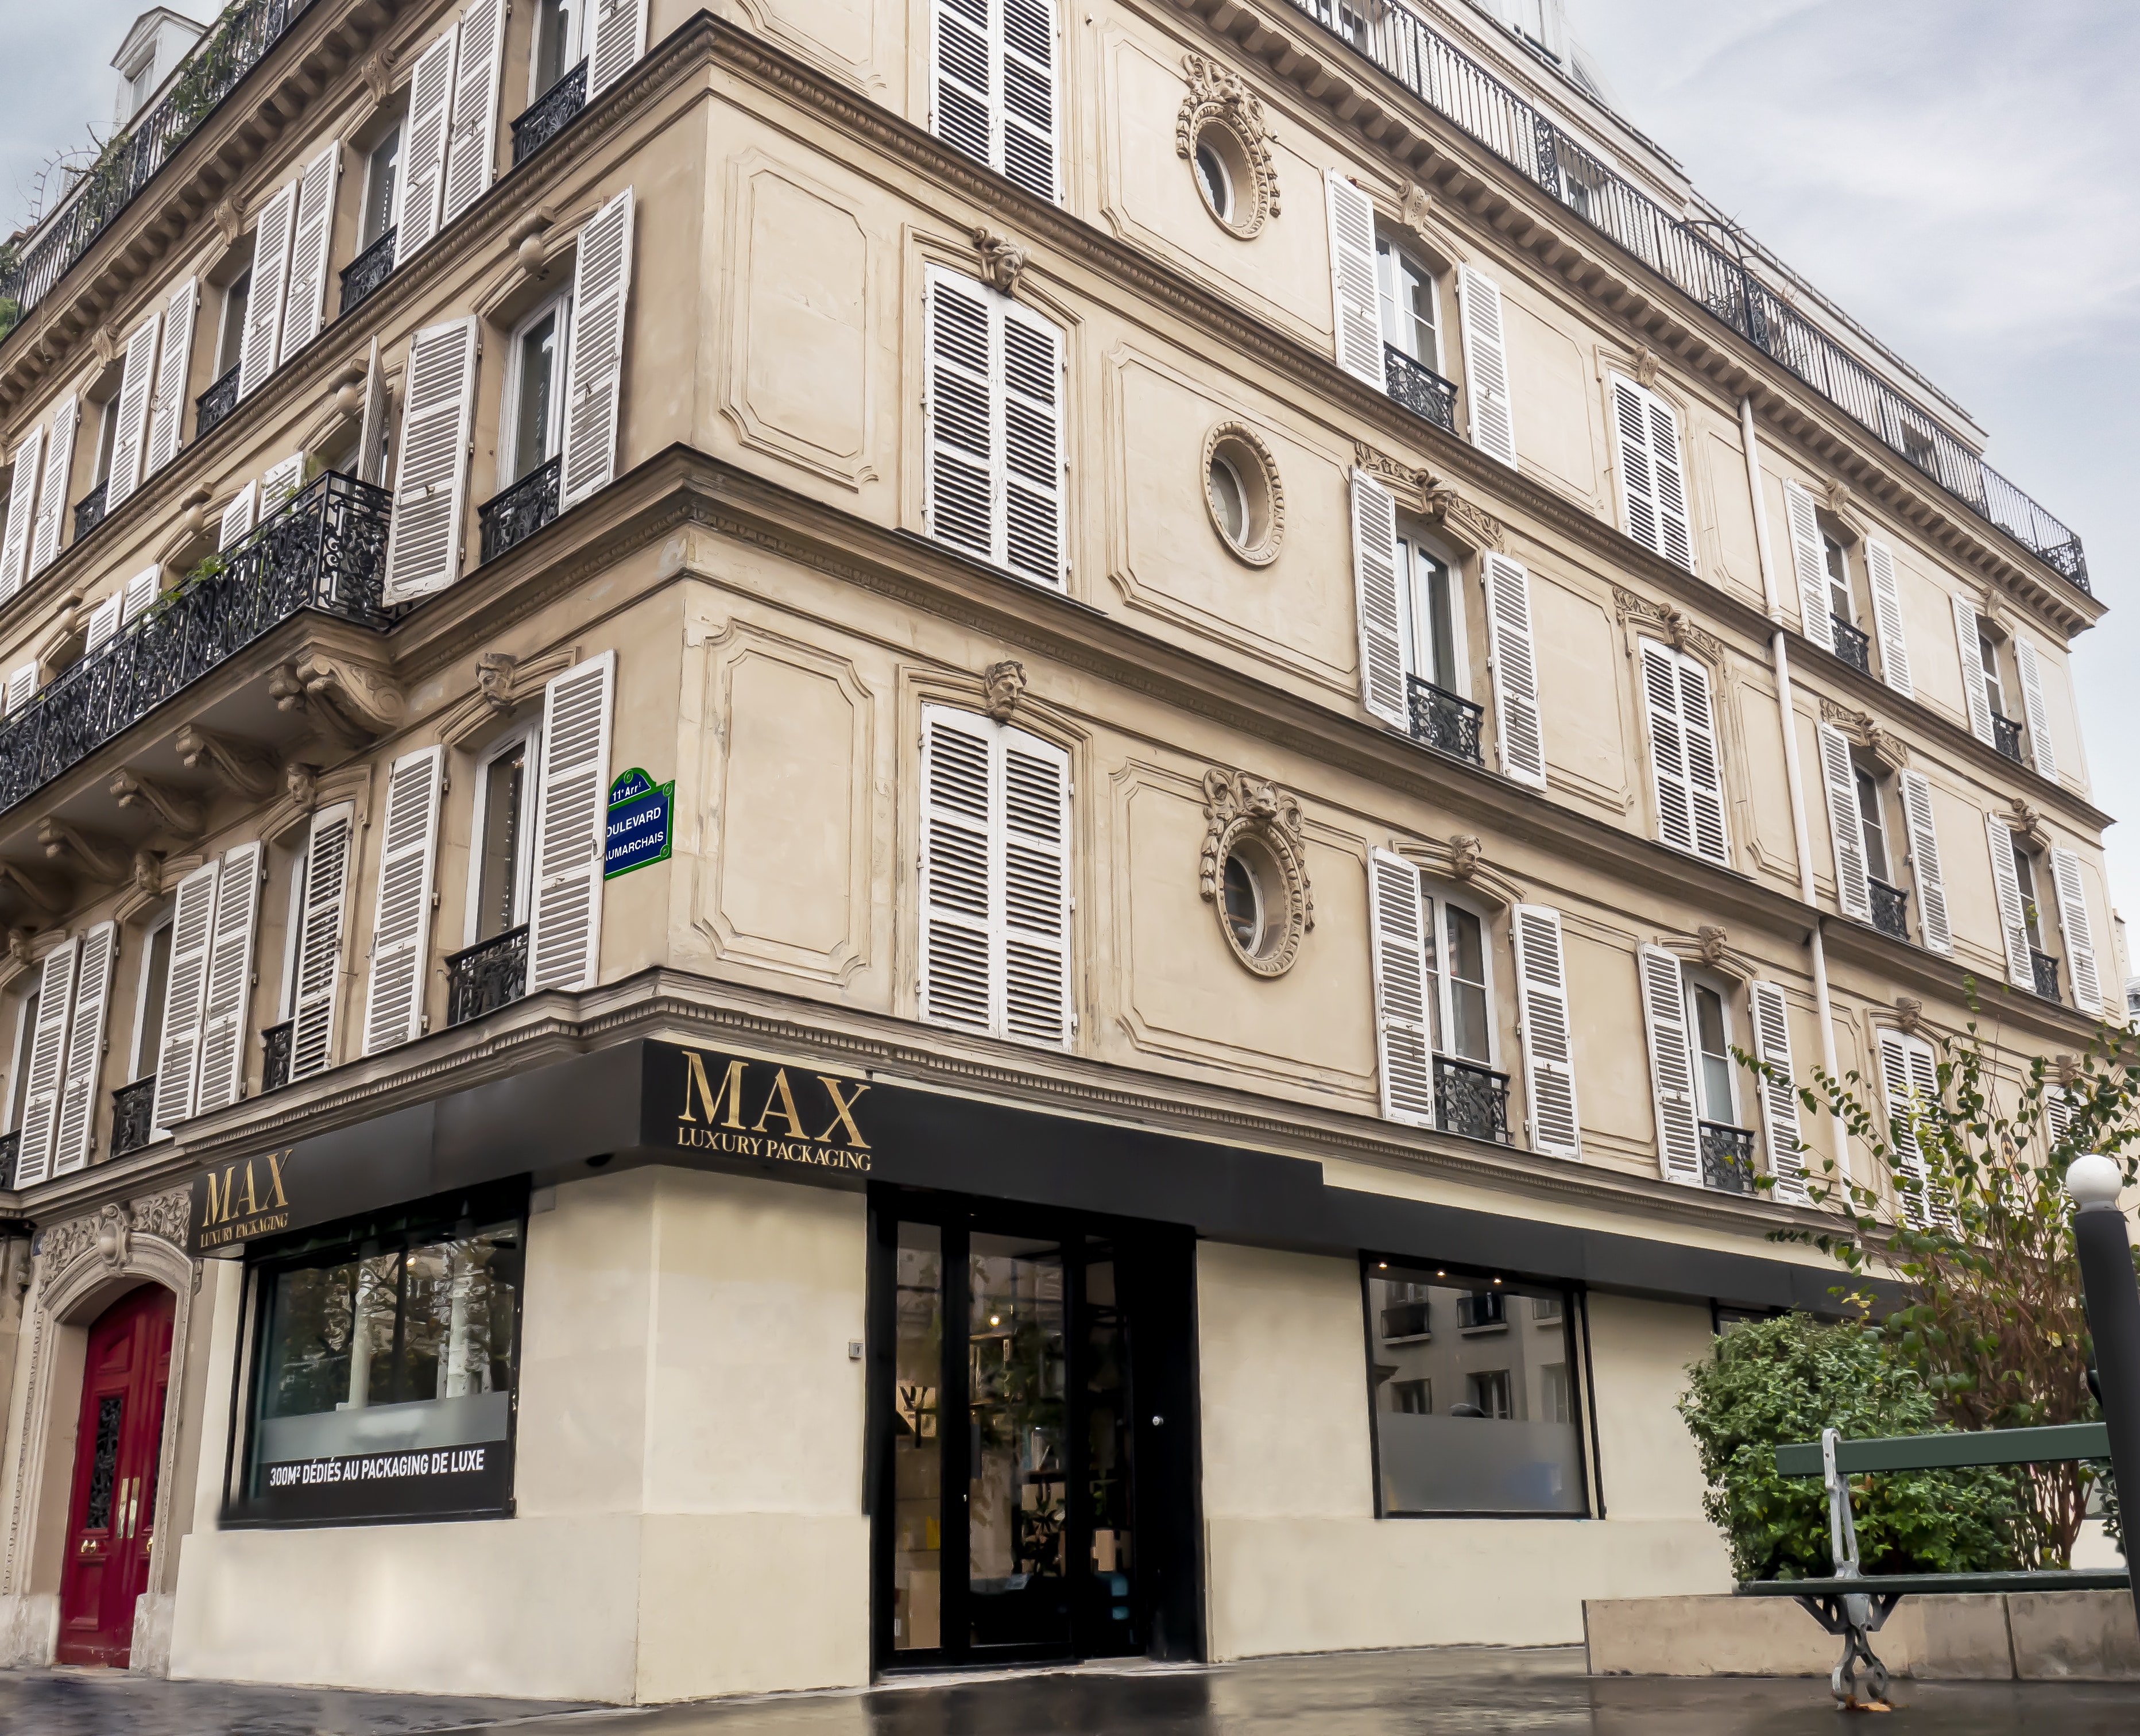 Bureaux de Max Luxury Packaging au 74 boulevard Beaumarchais à Paris avec notre showroom de 300 mètres carrés dédiés au packaging de luxe.